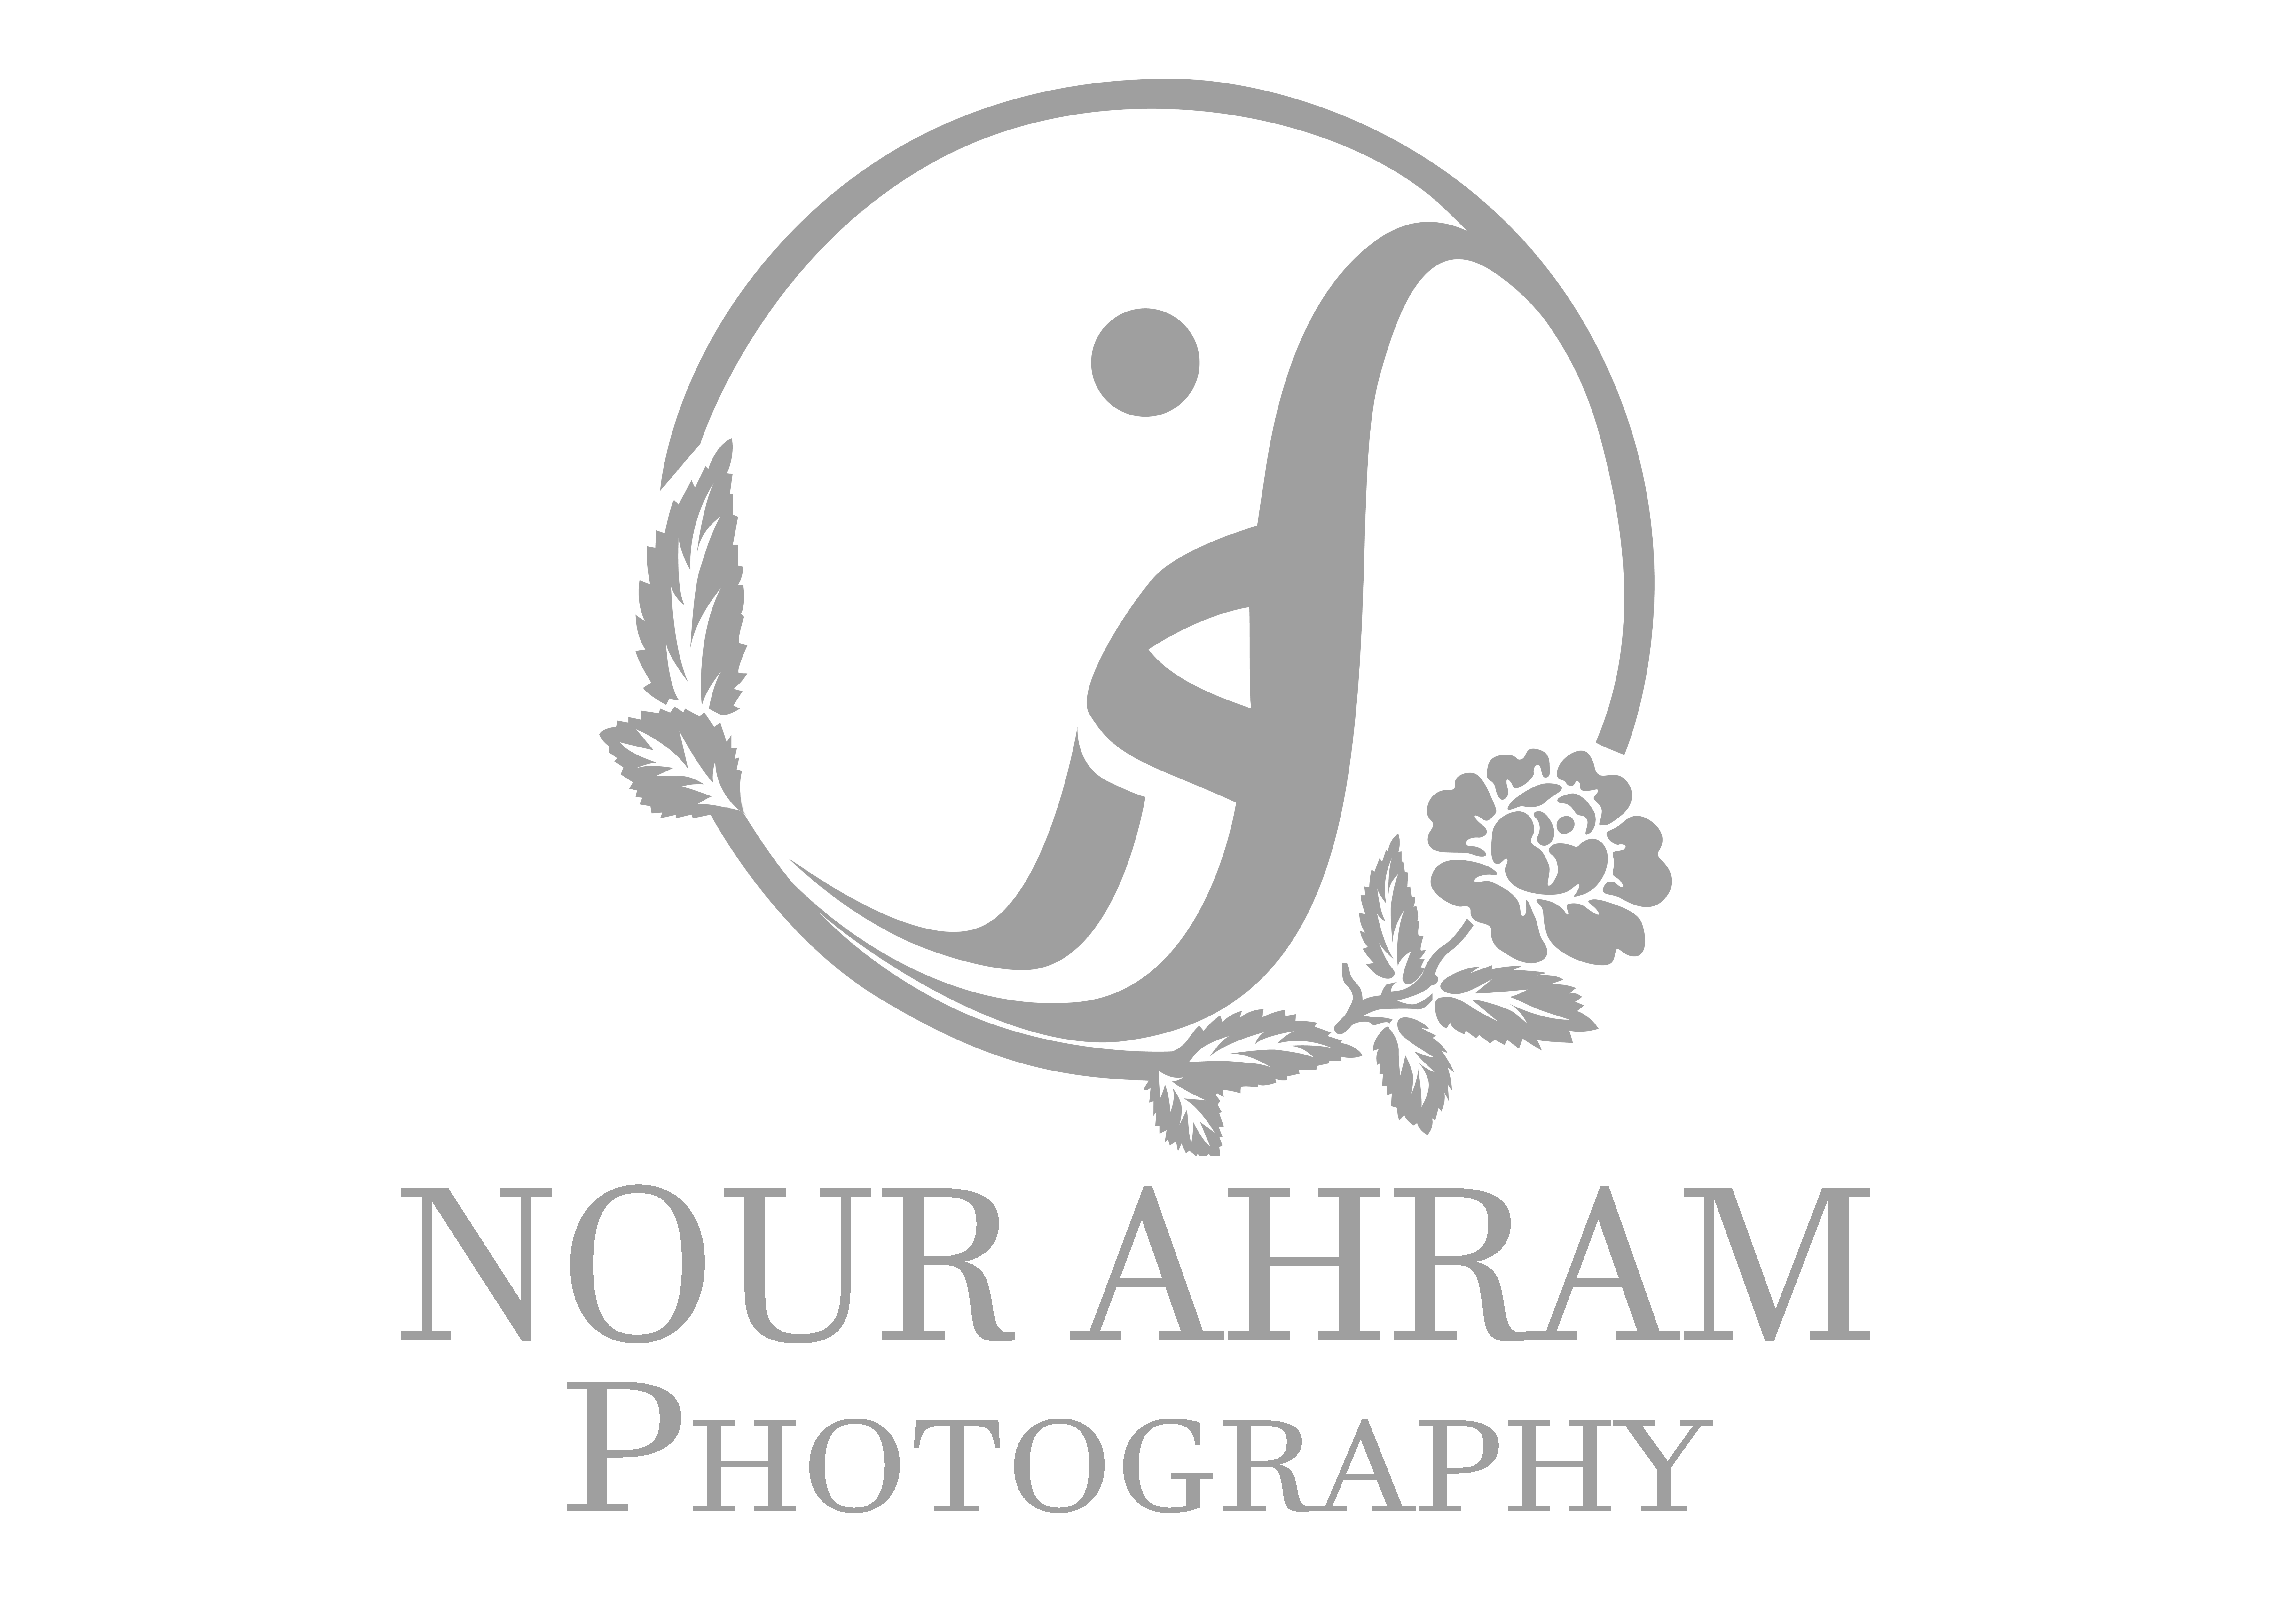 Nour Ahram Photography